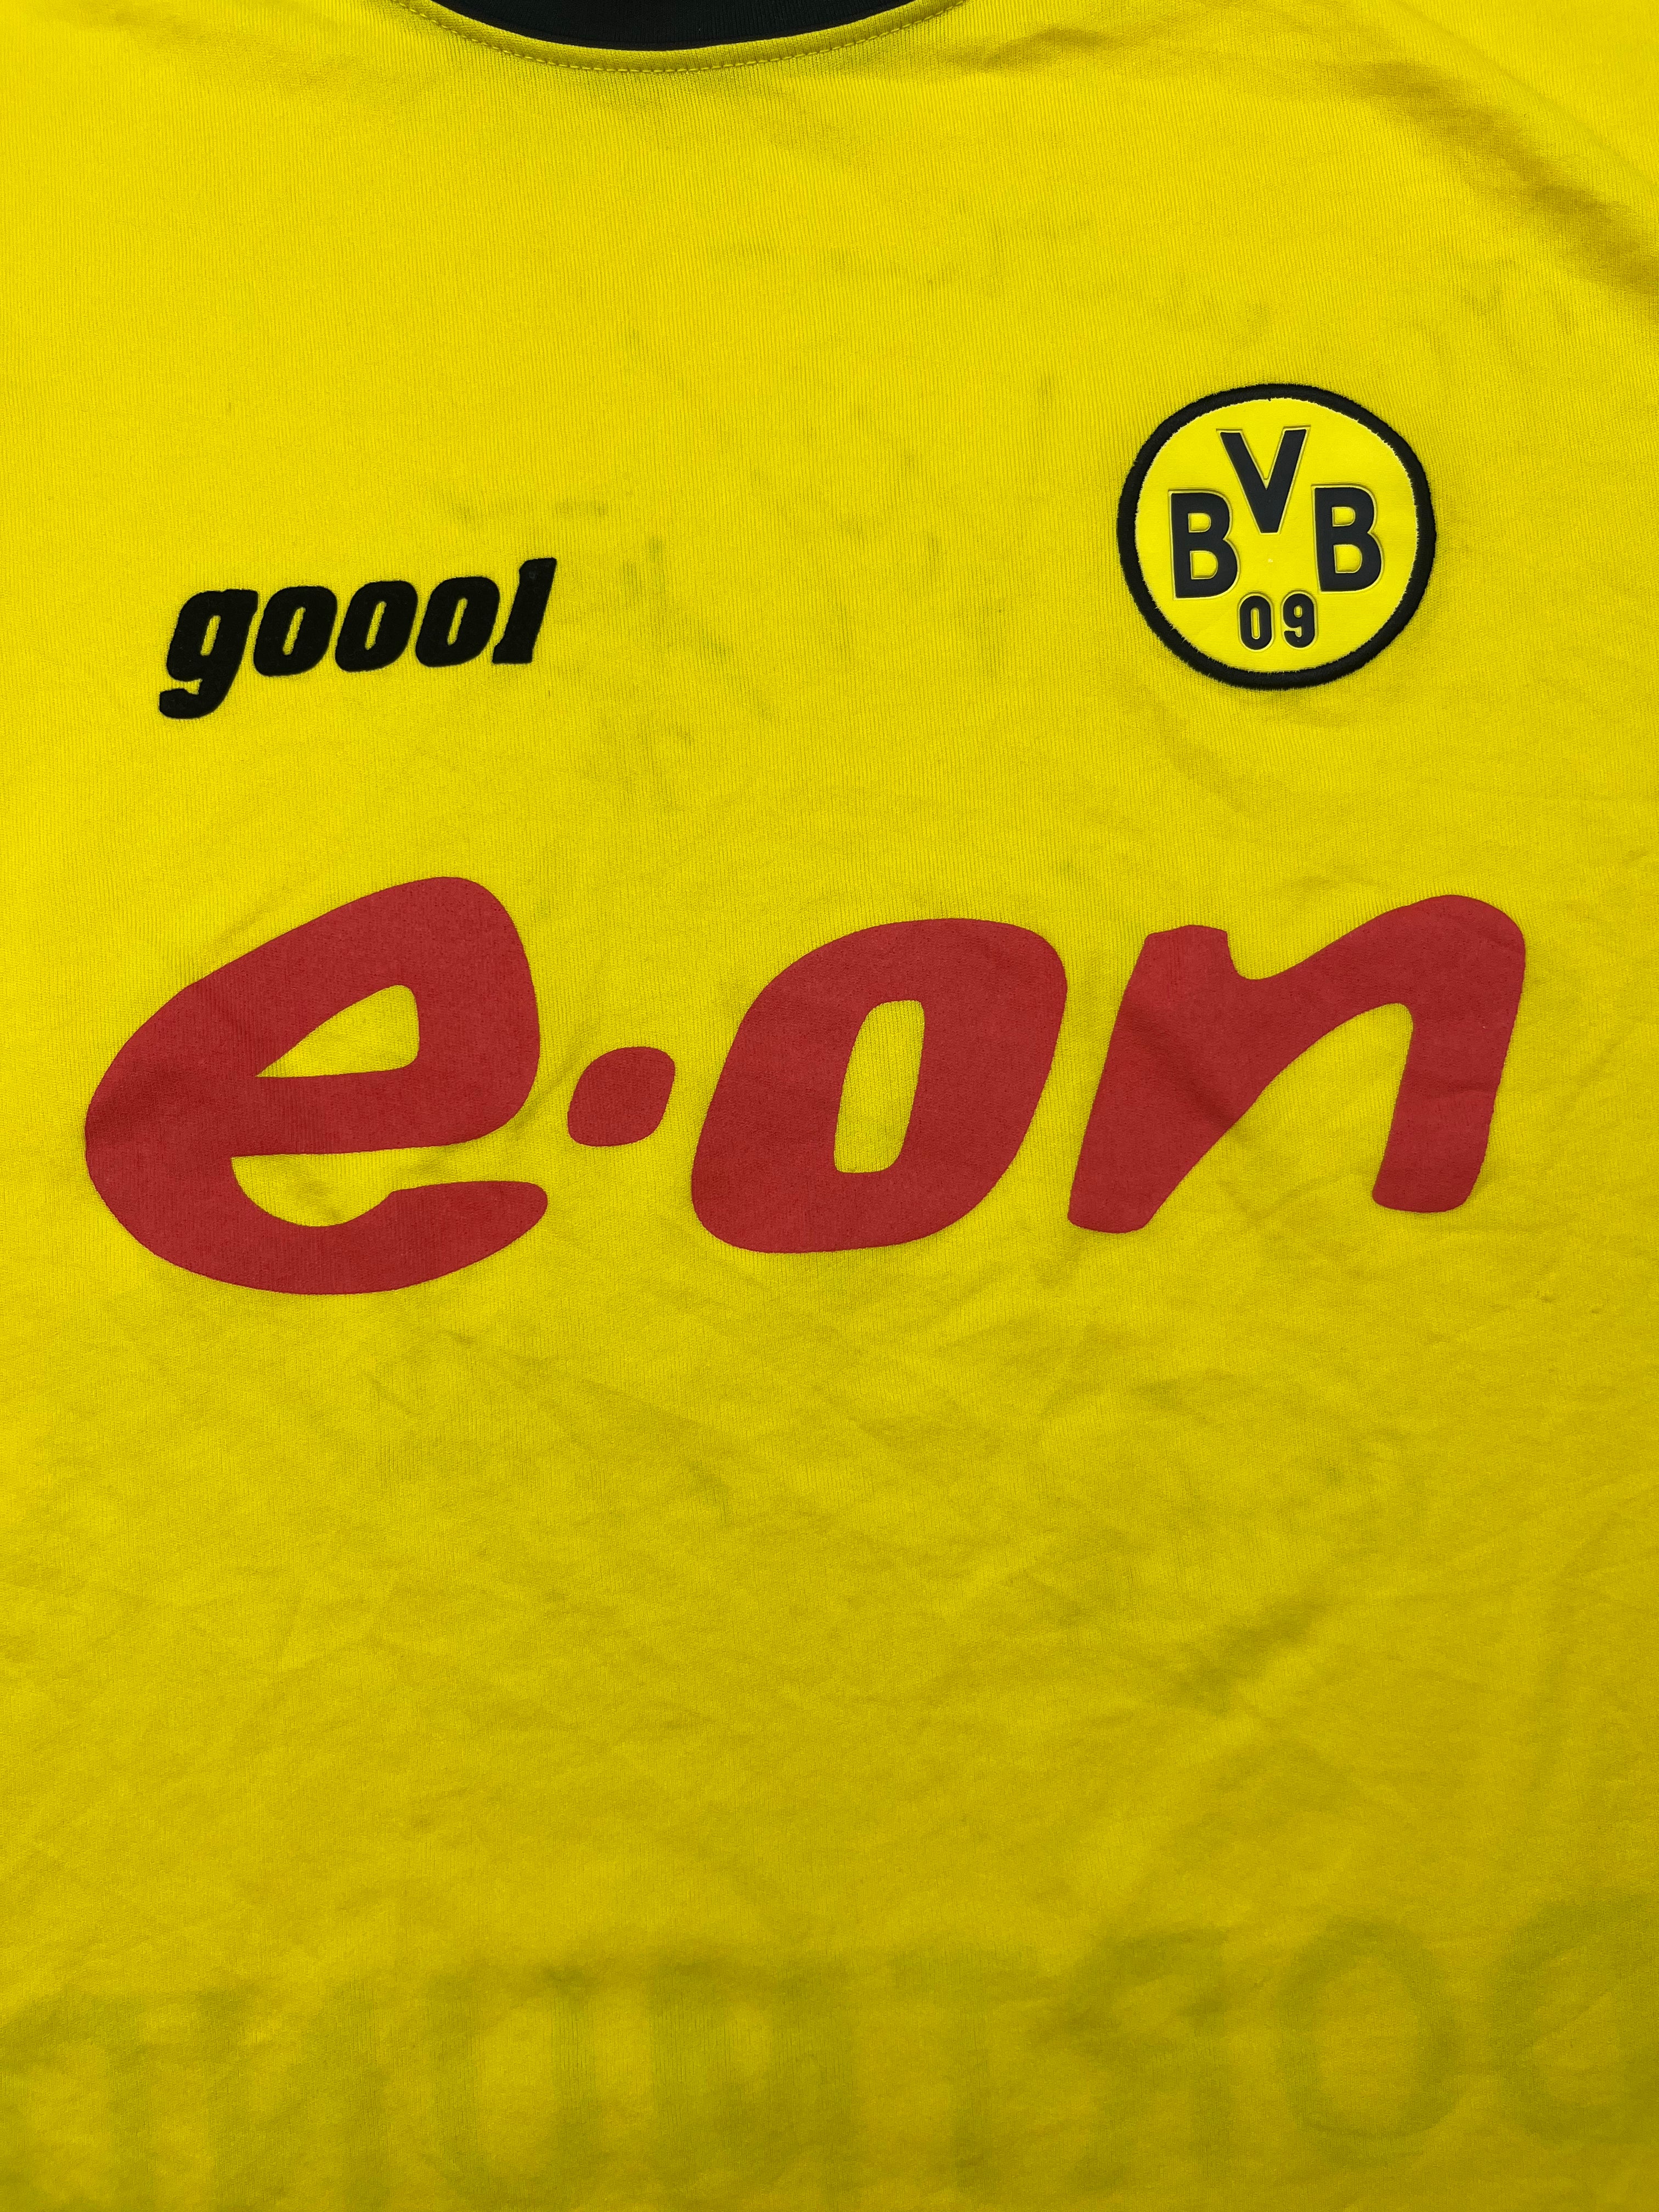 2003/04 Borussia Dortmund ‘Squad Signed’ Home Shirt (XL) 9/10